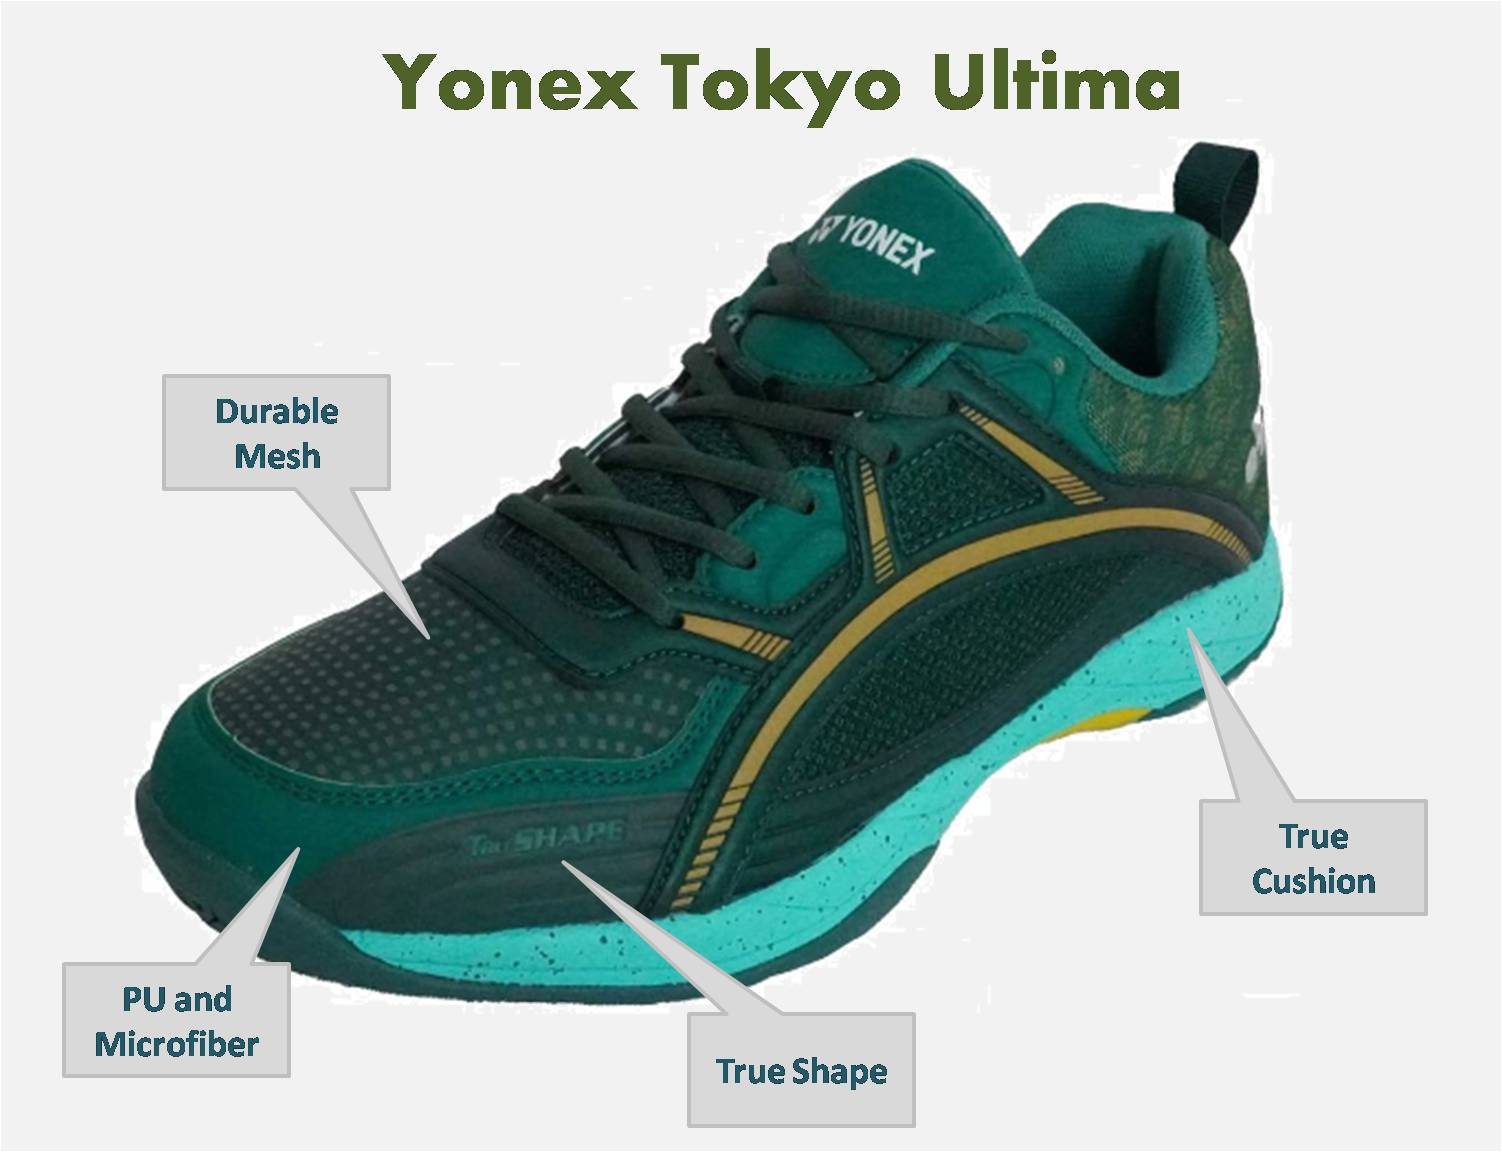 Yonex_Tokyo_Ultima_badminton_shoes_green_Color